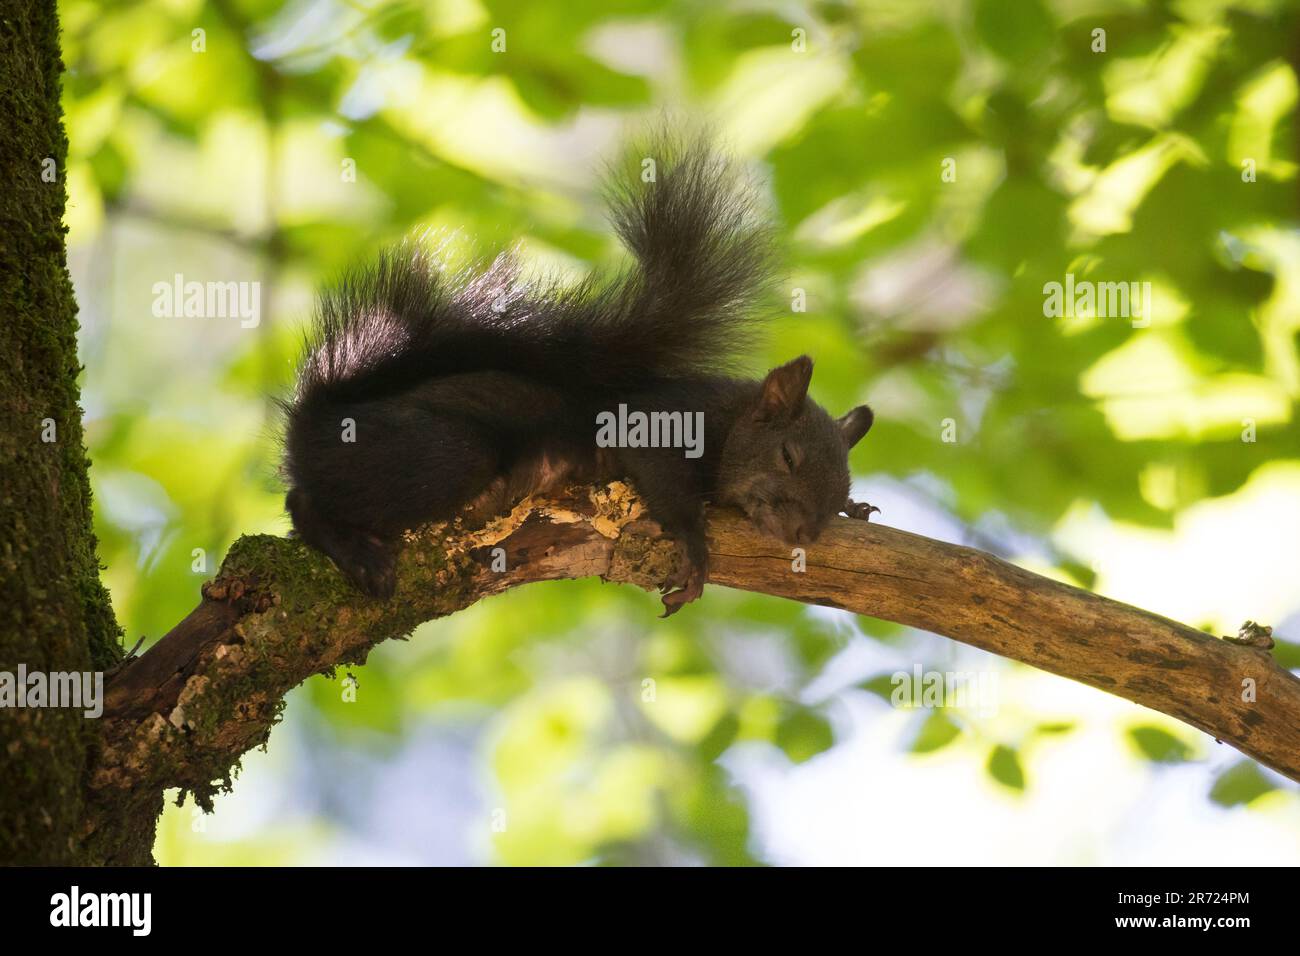 Eichhörnchen, ruht, schläft auf einem Ast, schlafend, ruhend, Pause, Europäisches Eichhörnchen, Eurasisches Eichhörnchen, Sciurus vulgaris, European r Stock Photo